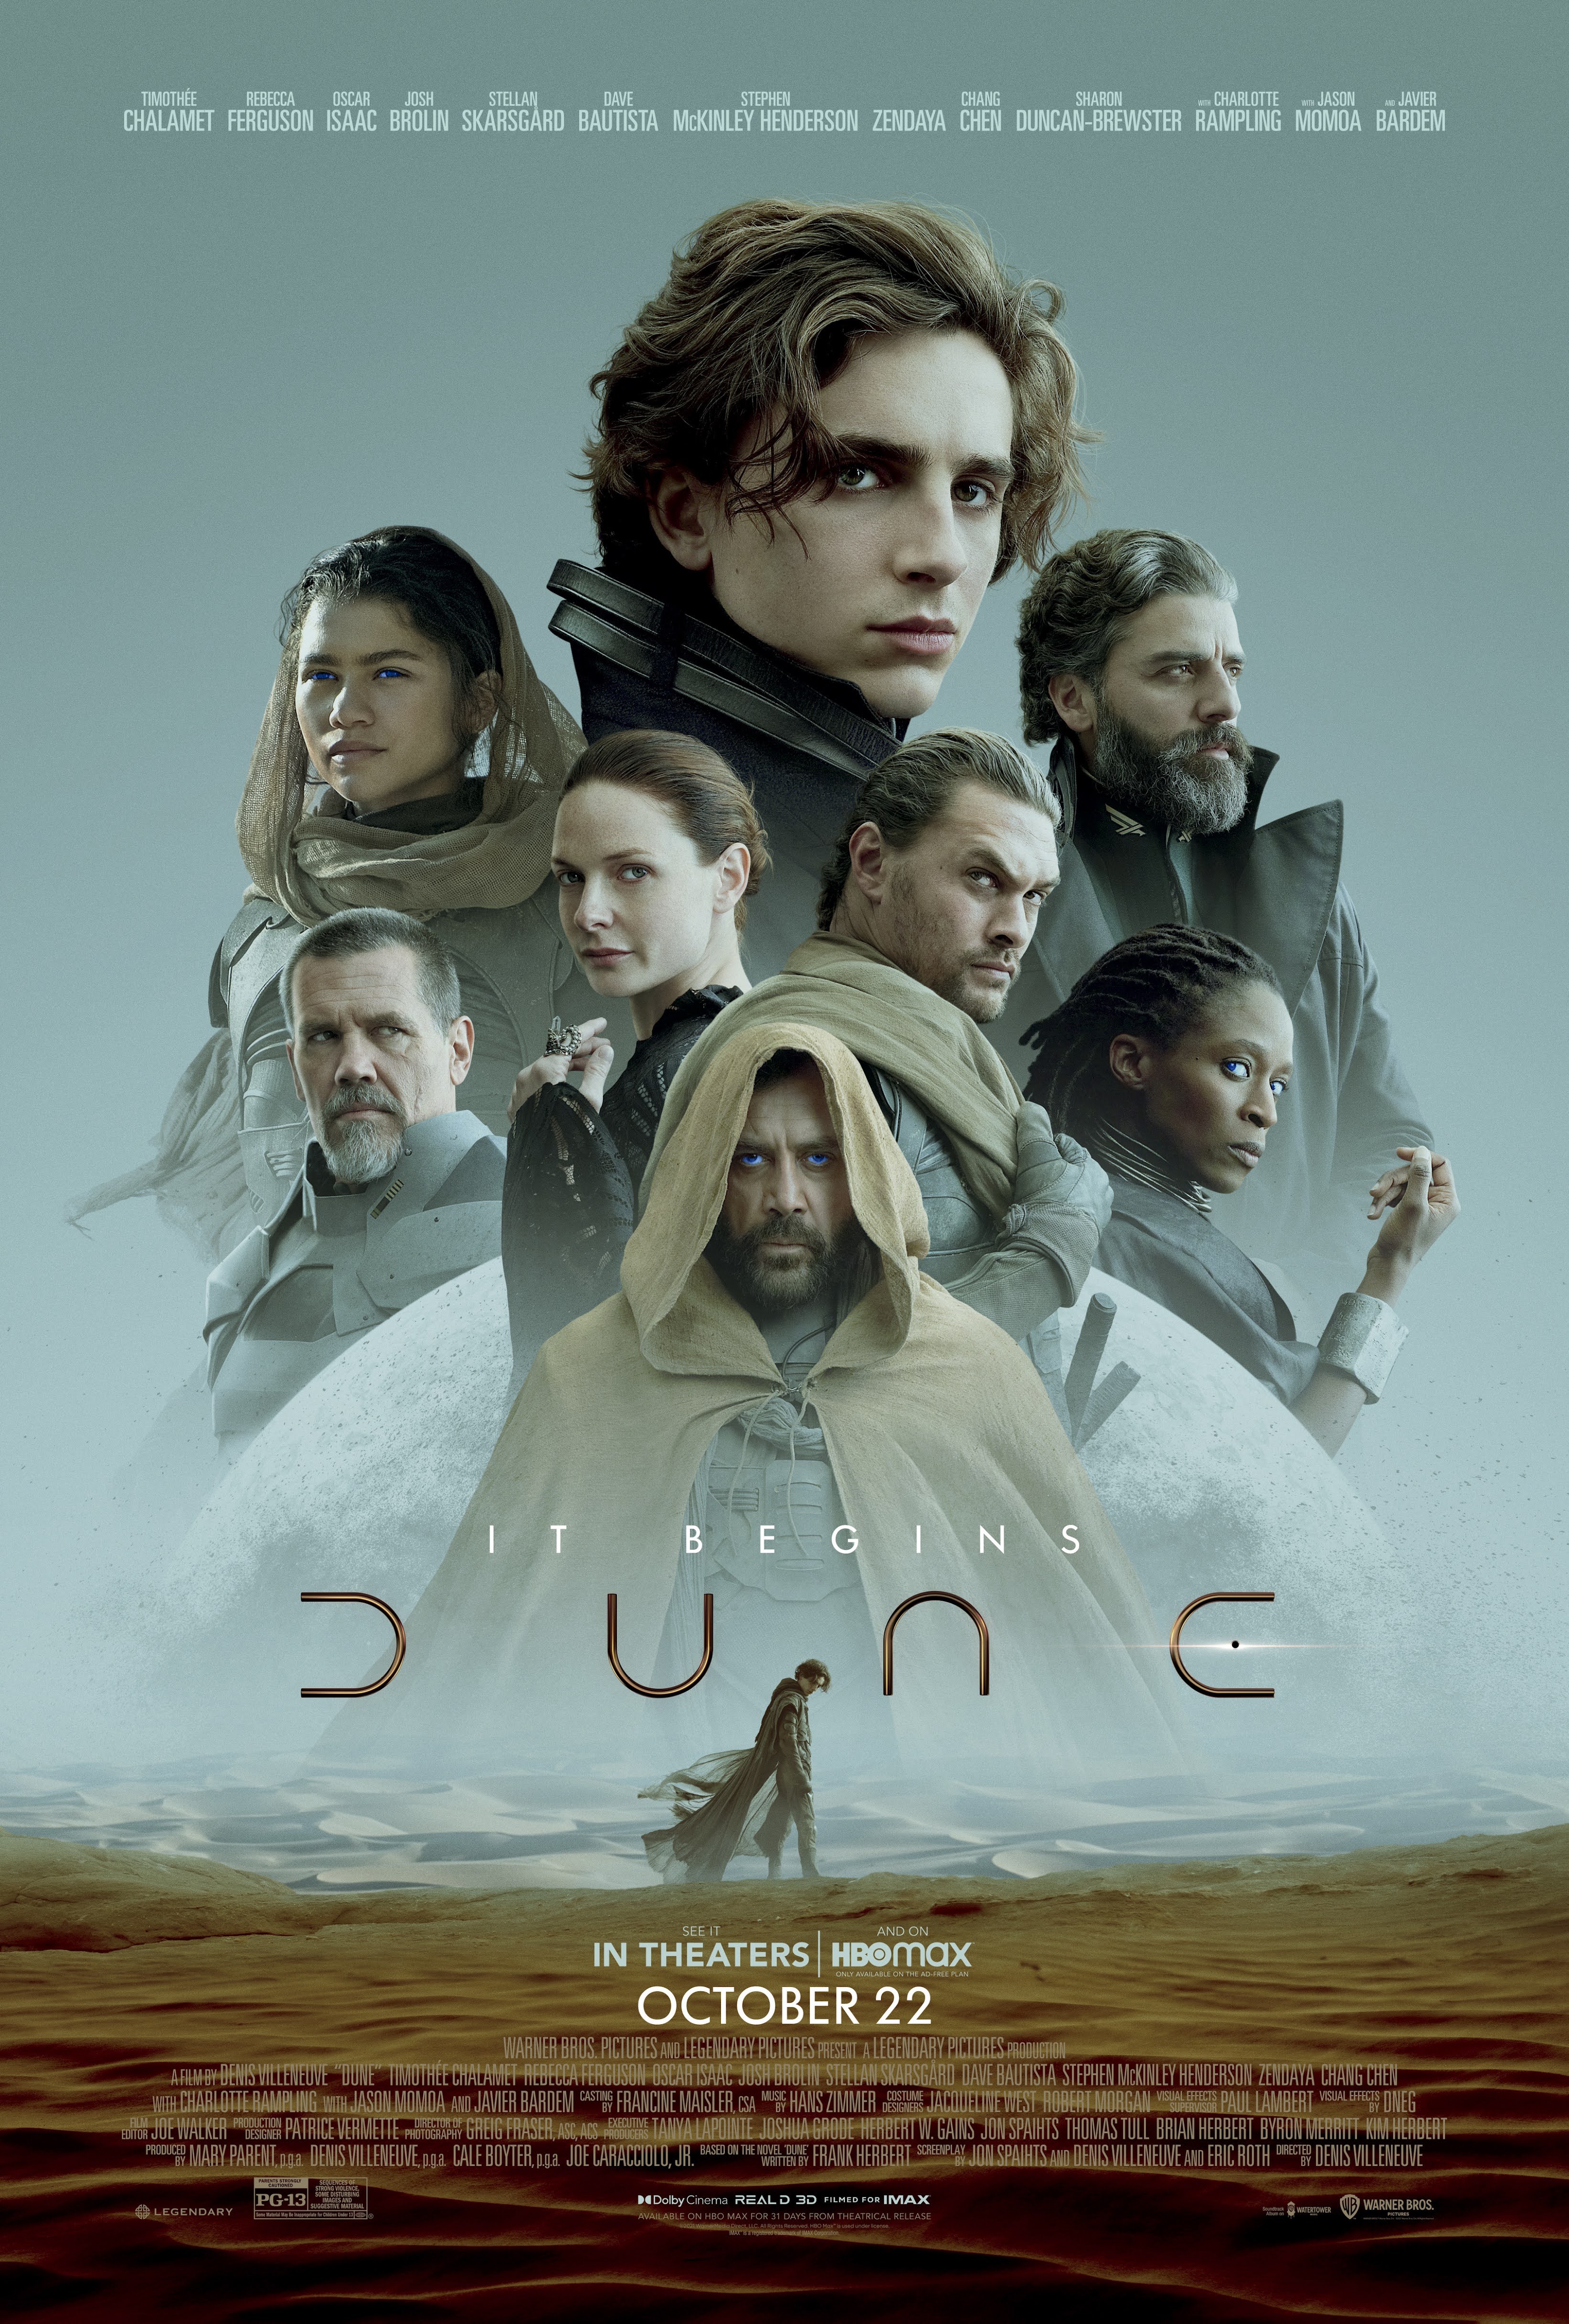 Dune (film) Warner Bros pic